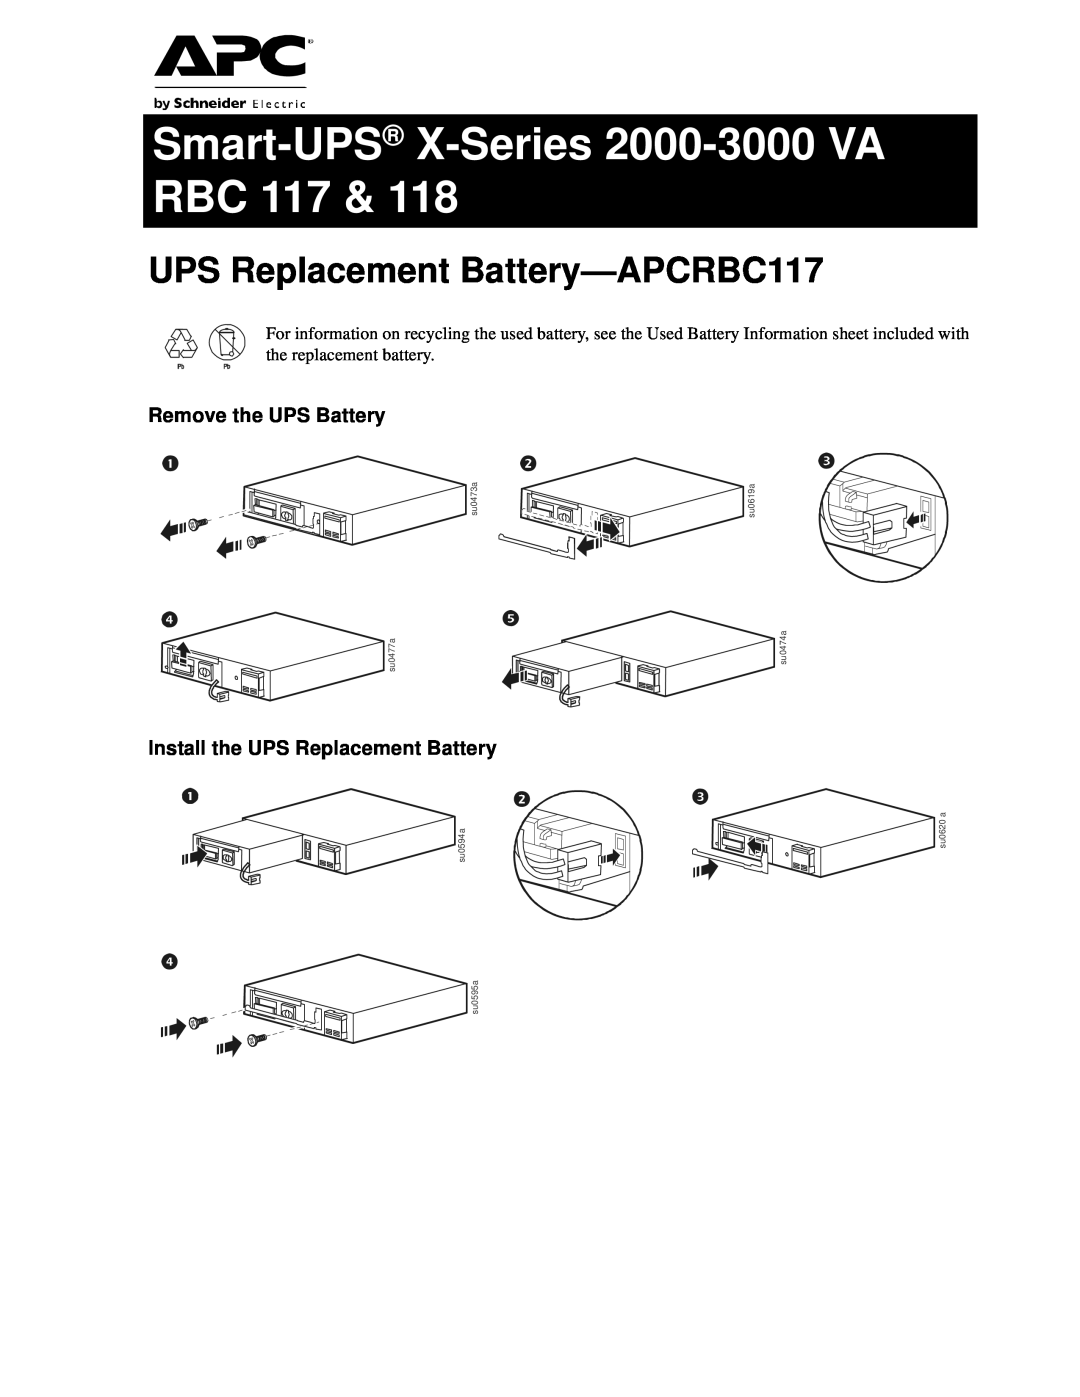 APC RBC 118 manual UPS Replacement Battery-APCRBC117, Remove the UPS Battery, Smart-UPS X-Series 2000-3000 VA RBC 117 